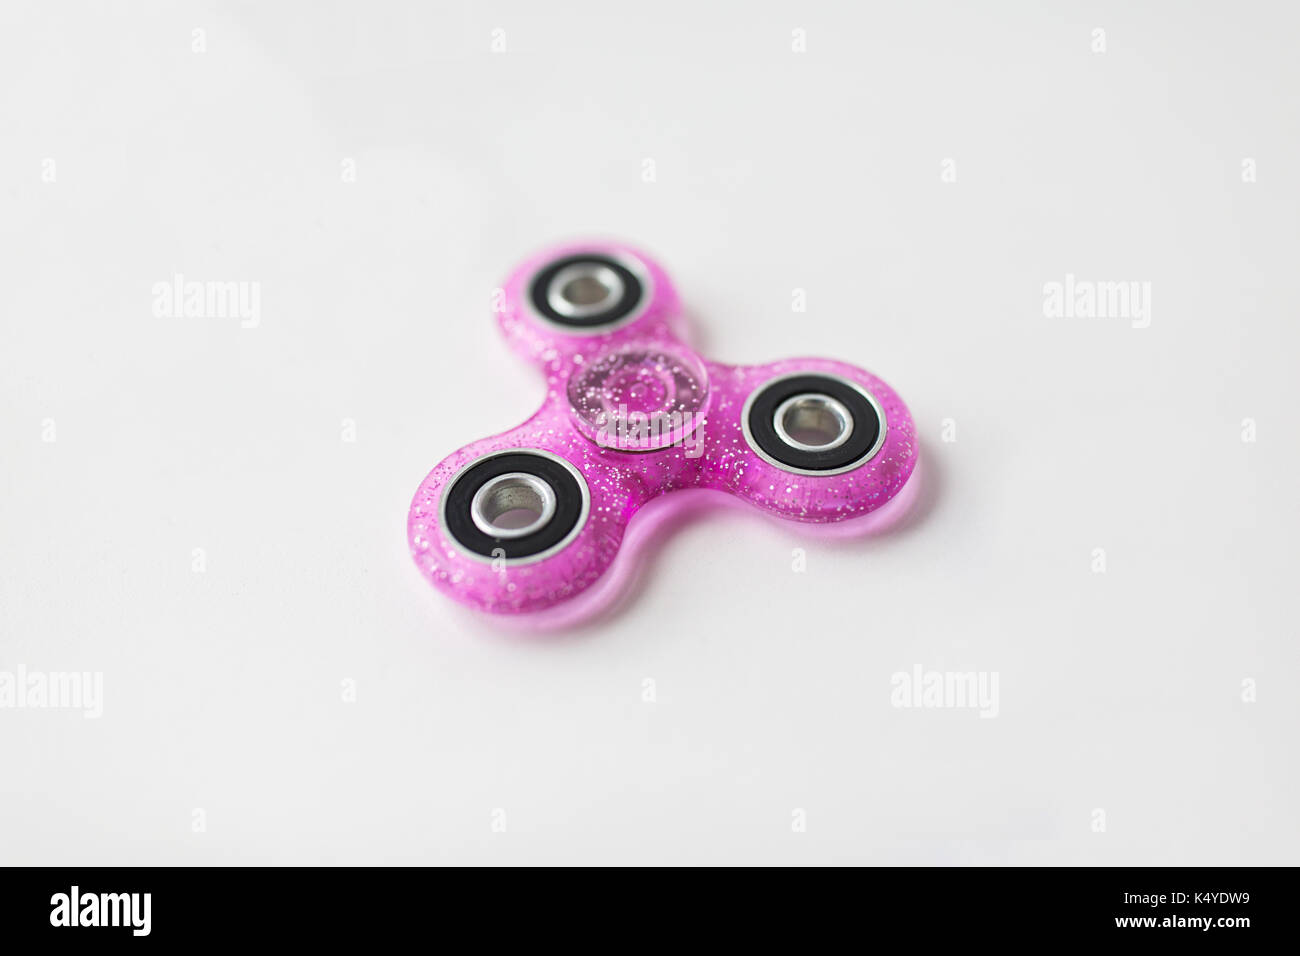 pink glittered fidget spinner Stock Photo